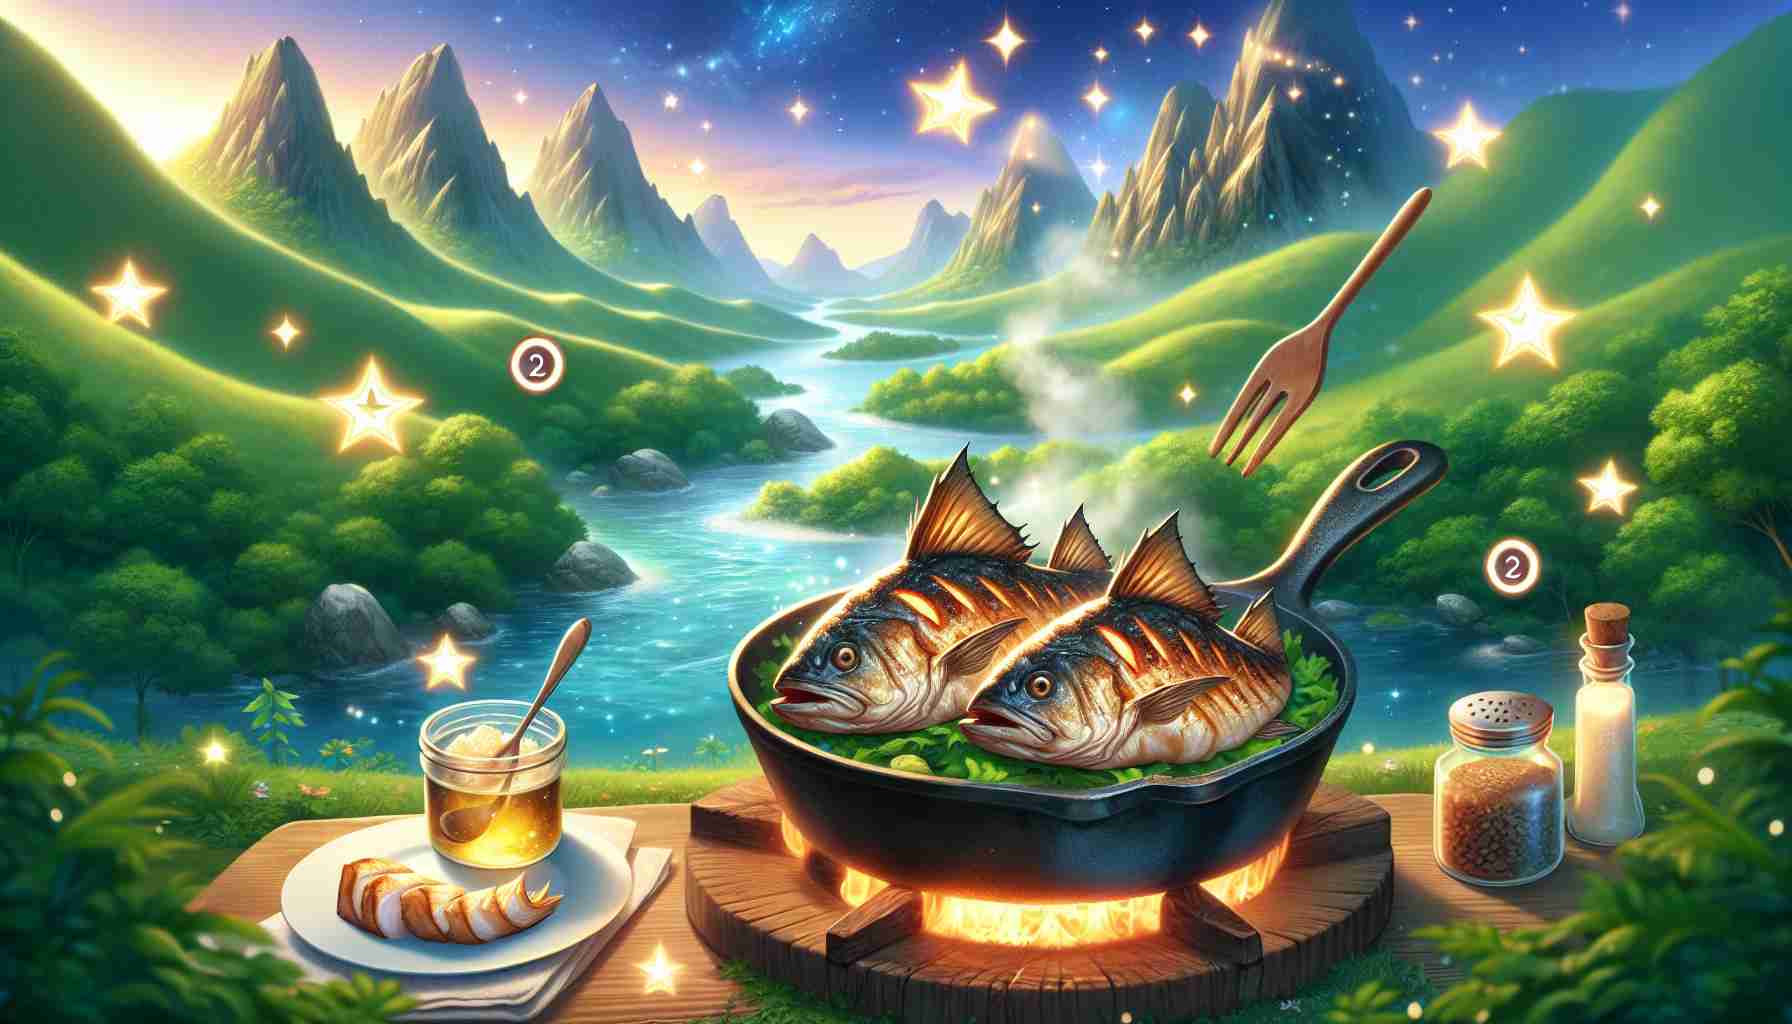 Recette Baudroie grillée à la poêle Disney Dreamlight Valley : Guide complet ingrédients et préparation